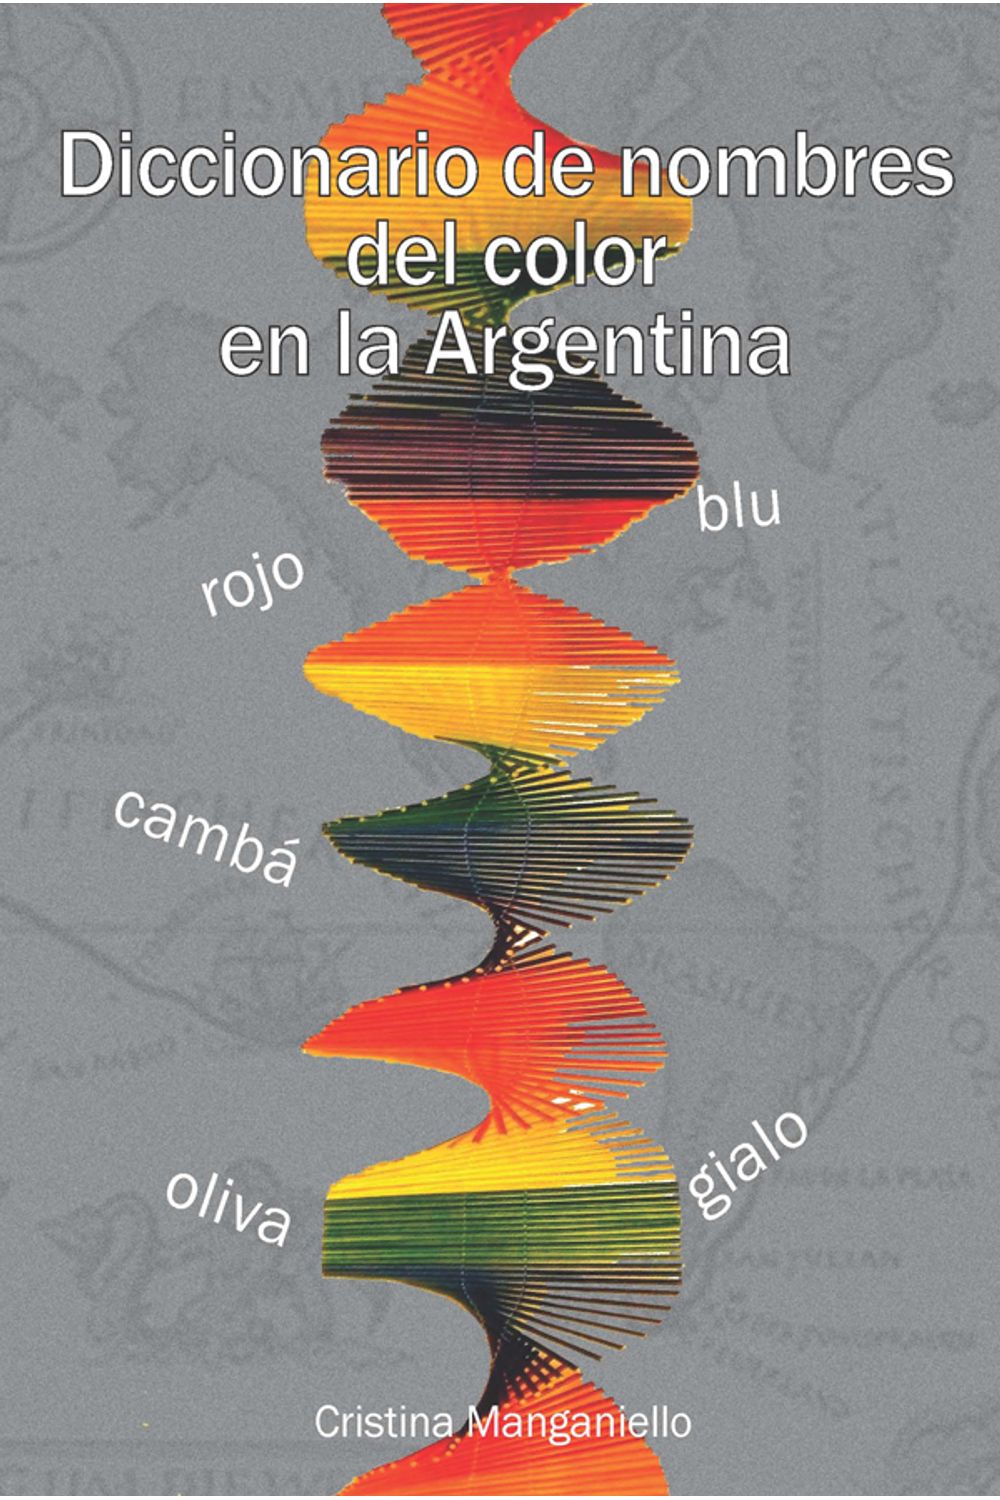 bm-diccionario-de-nombres-del-color-en-la-argentina-nobukodiseno-editorial-9789875844674